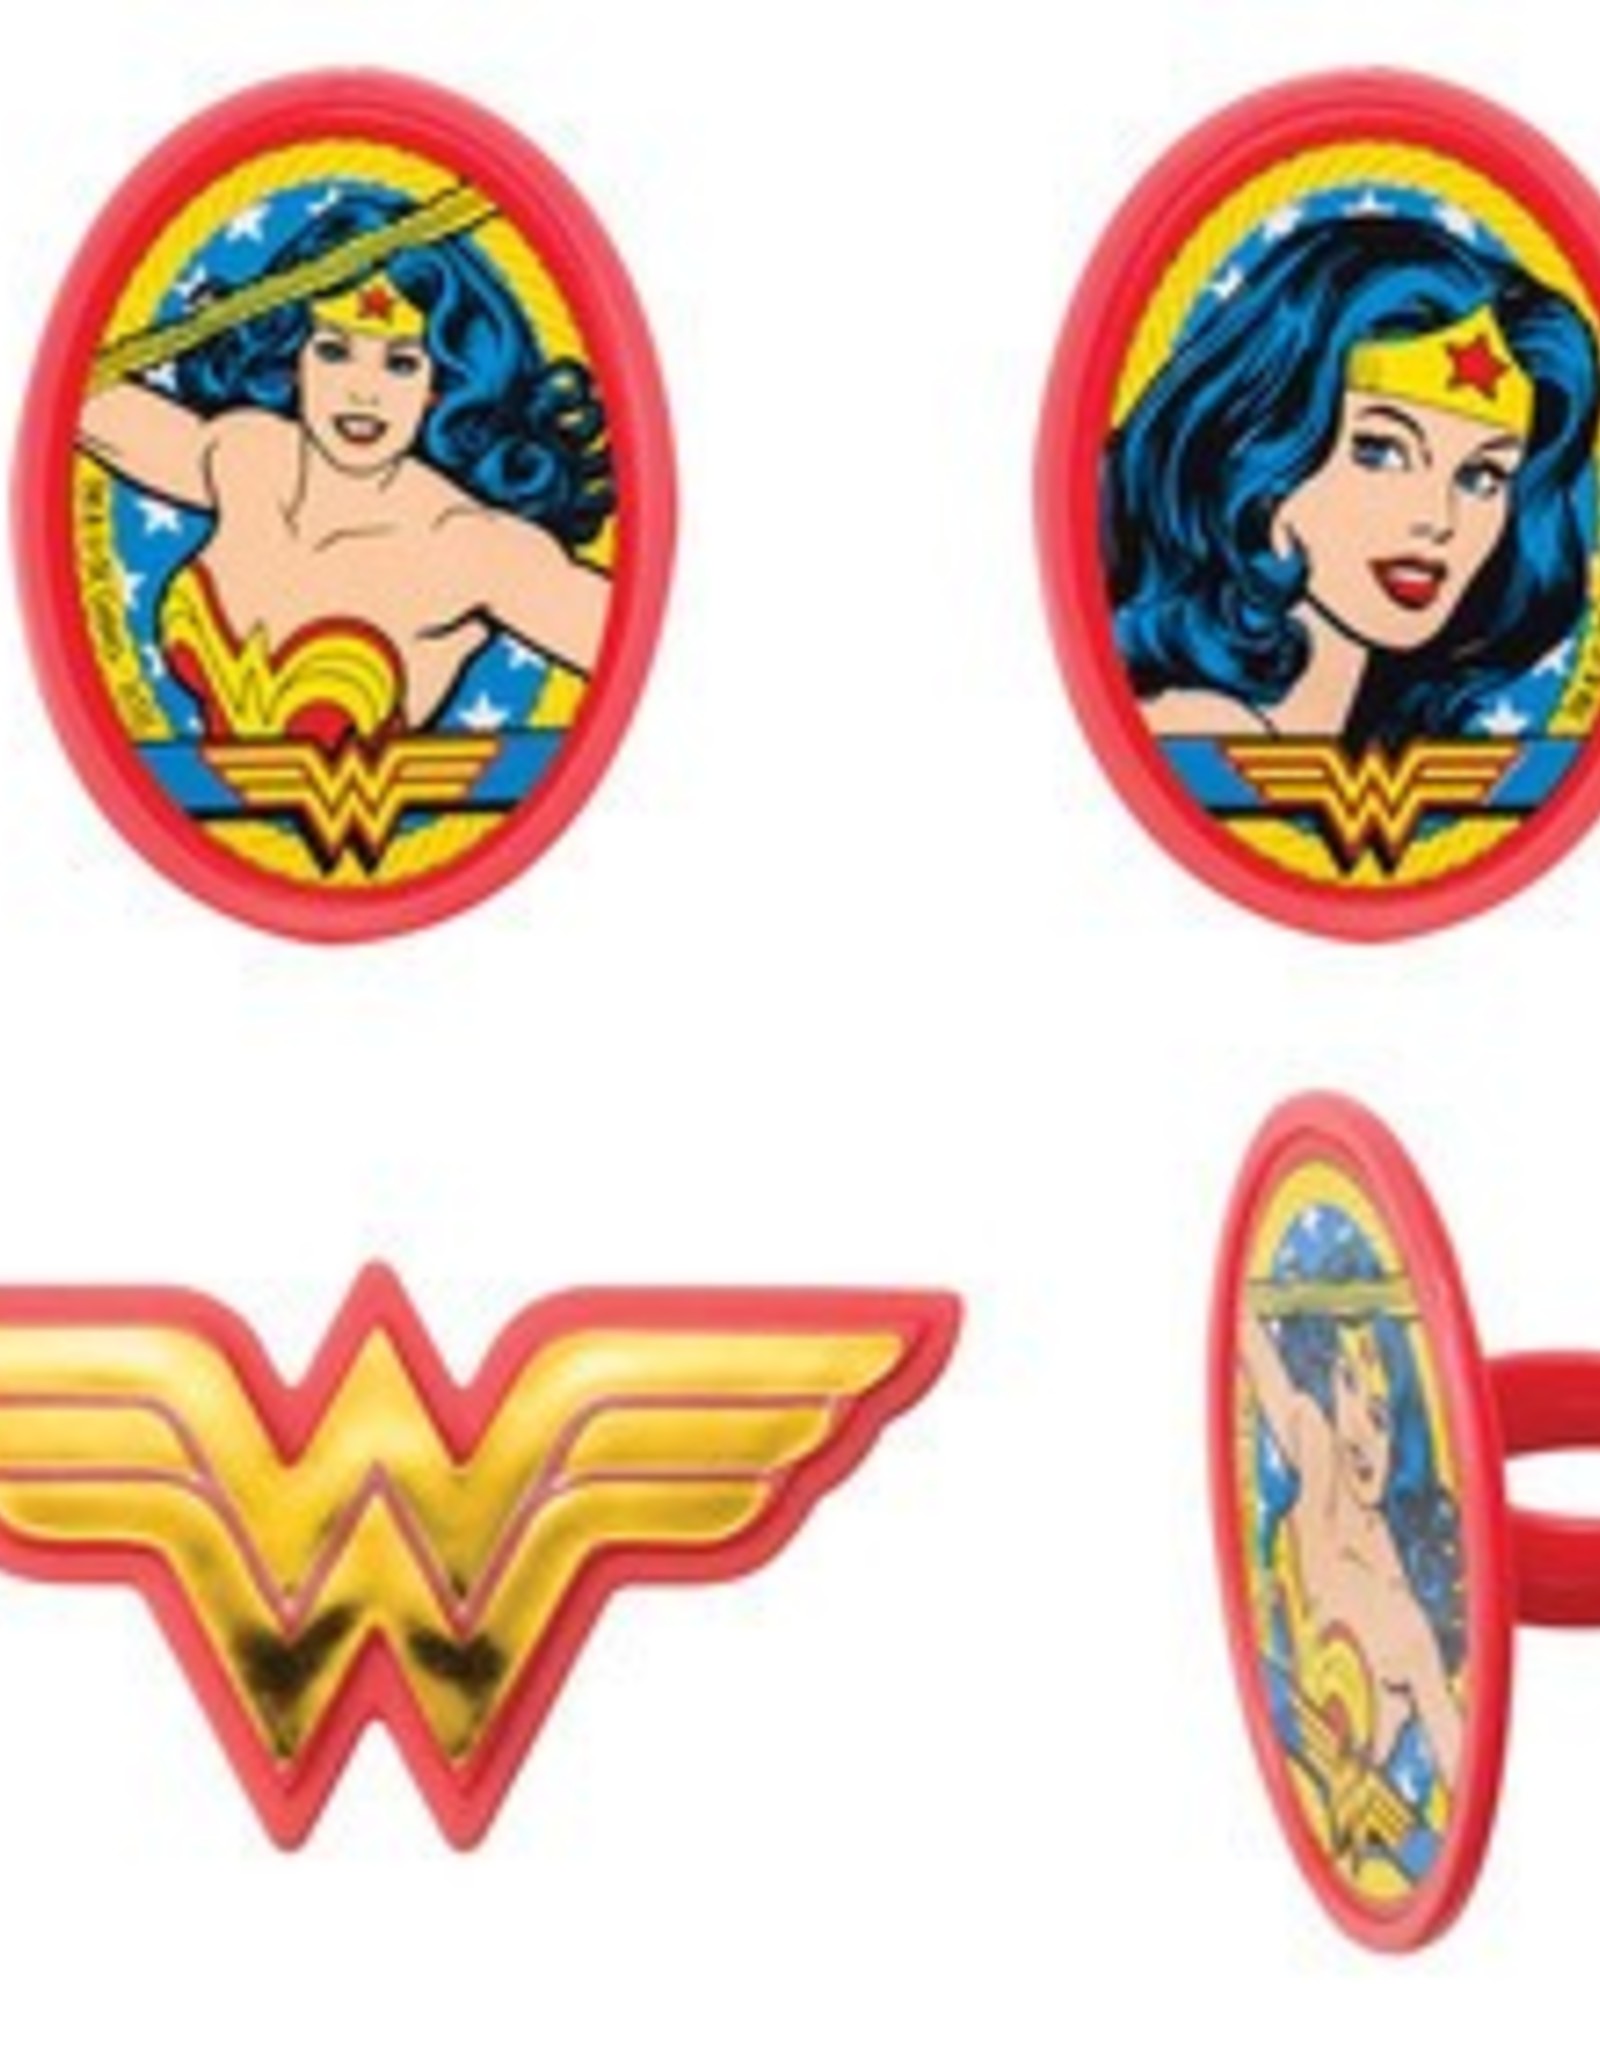 Wonder Woman Cupcake Rings (12 per pkg)